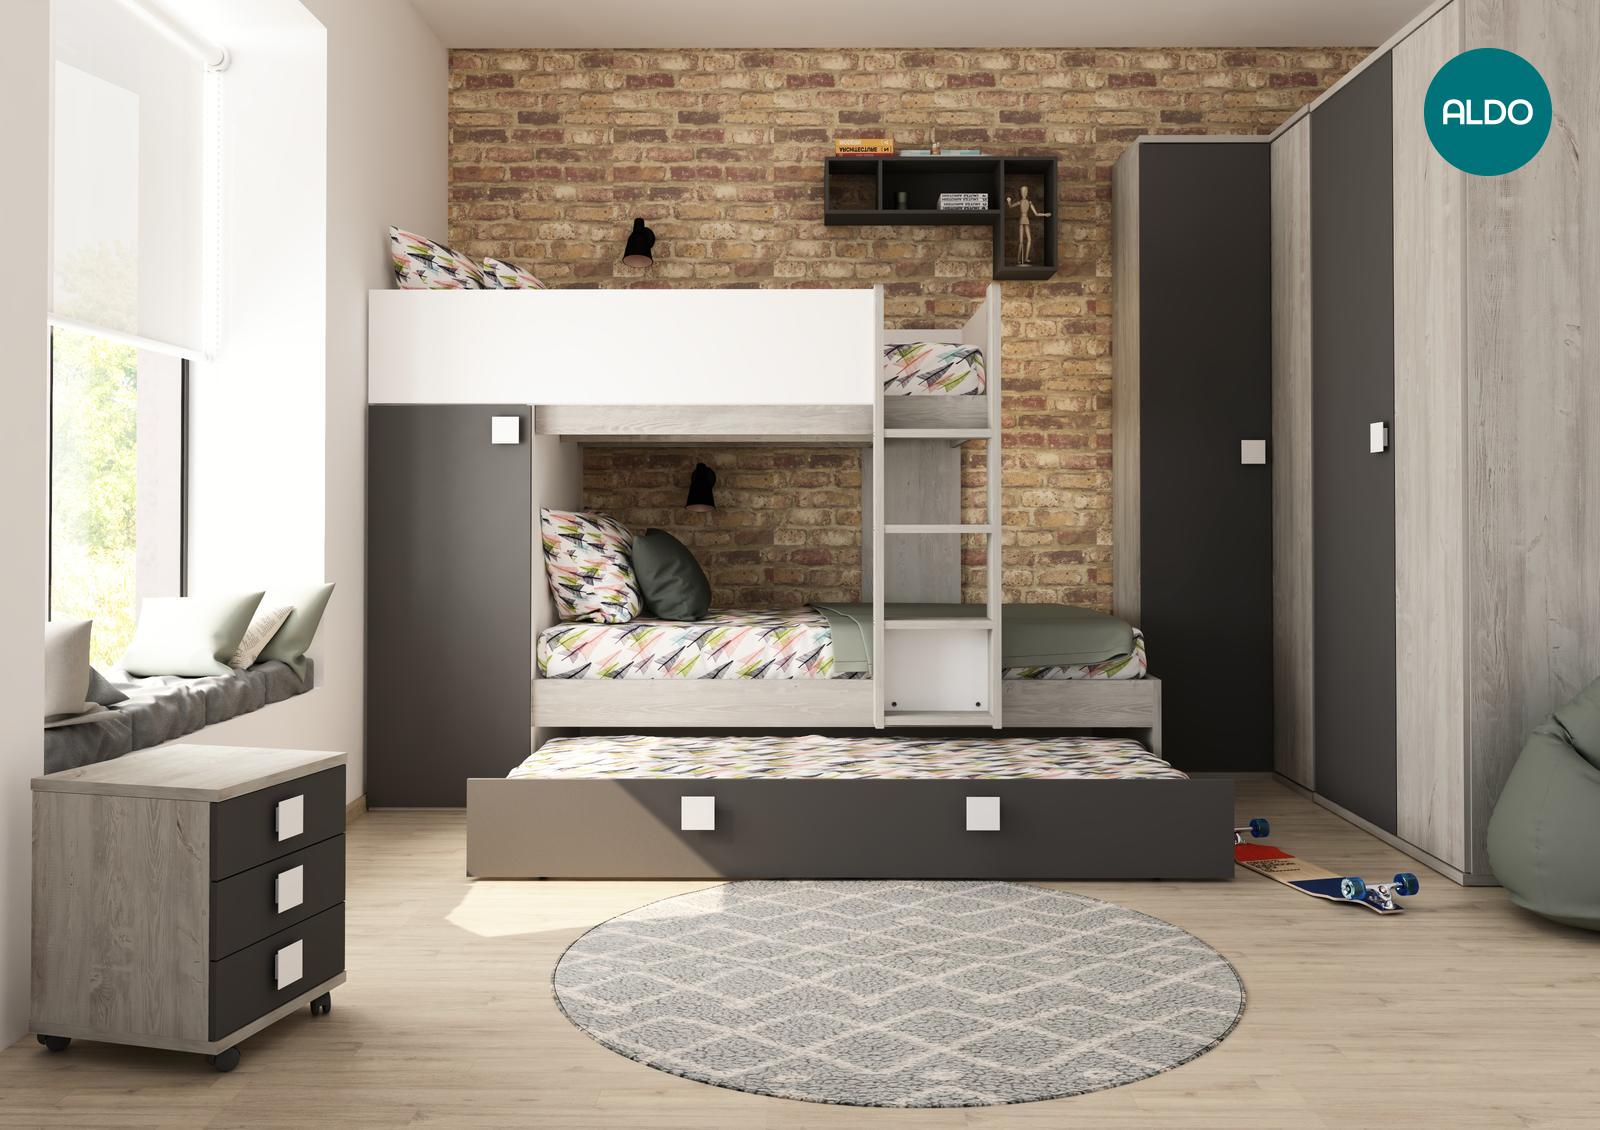 Detská izba pre tri deti - kolekcia Bo7 graphit, white, oak